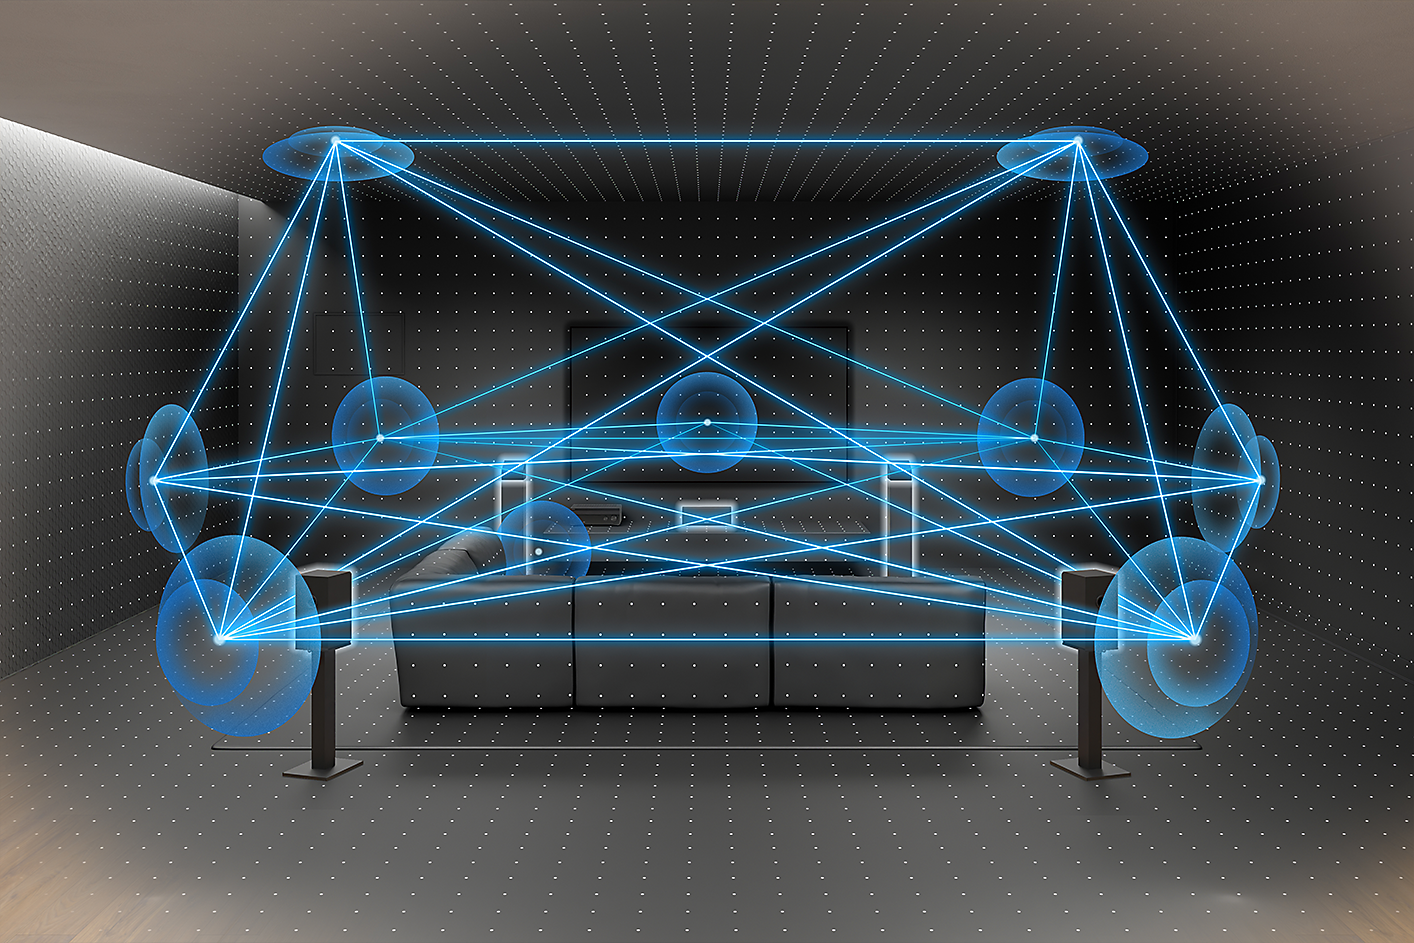 Slika soba sa kaučem, TV uređajem i zvučnicima. Više linija i krugova plave boje predstavlja kretanje zvuka